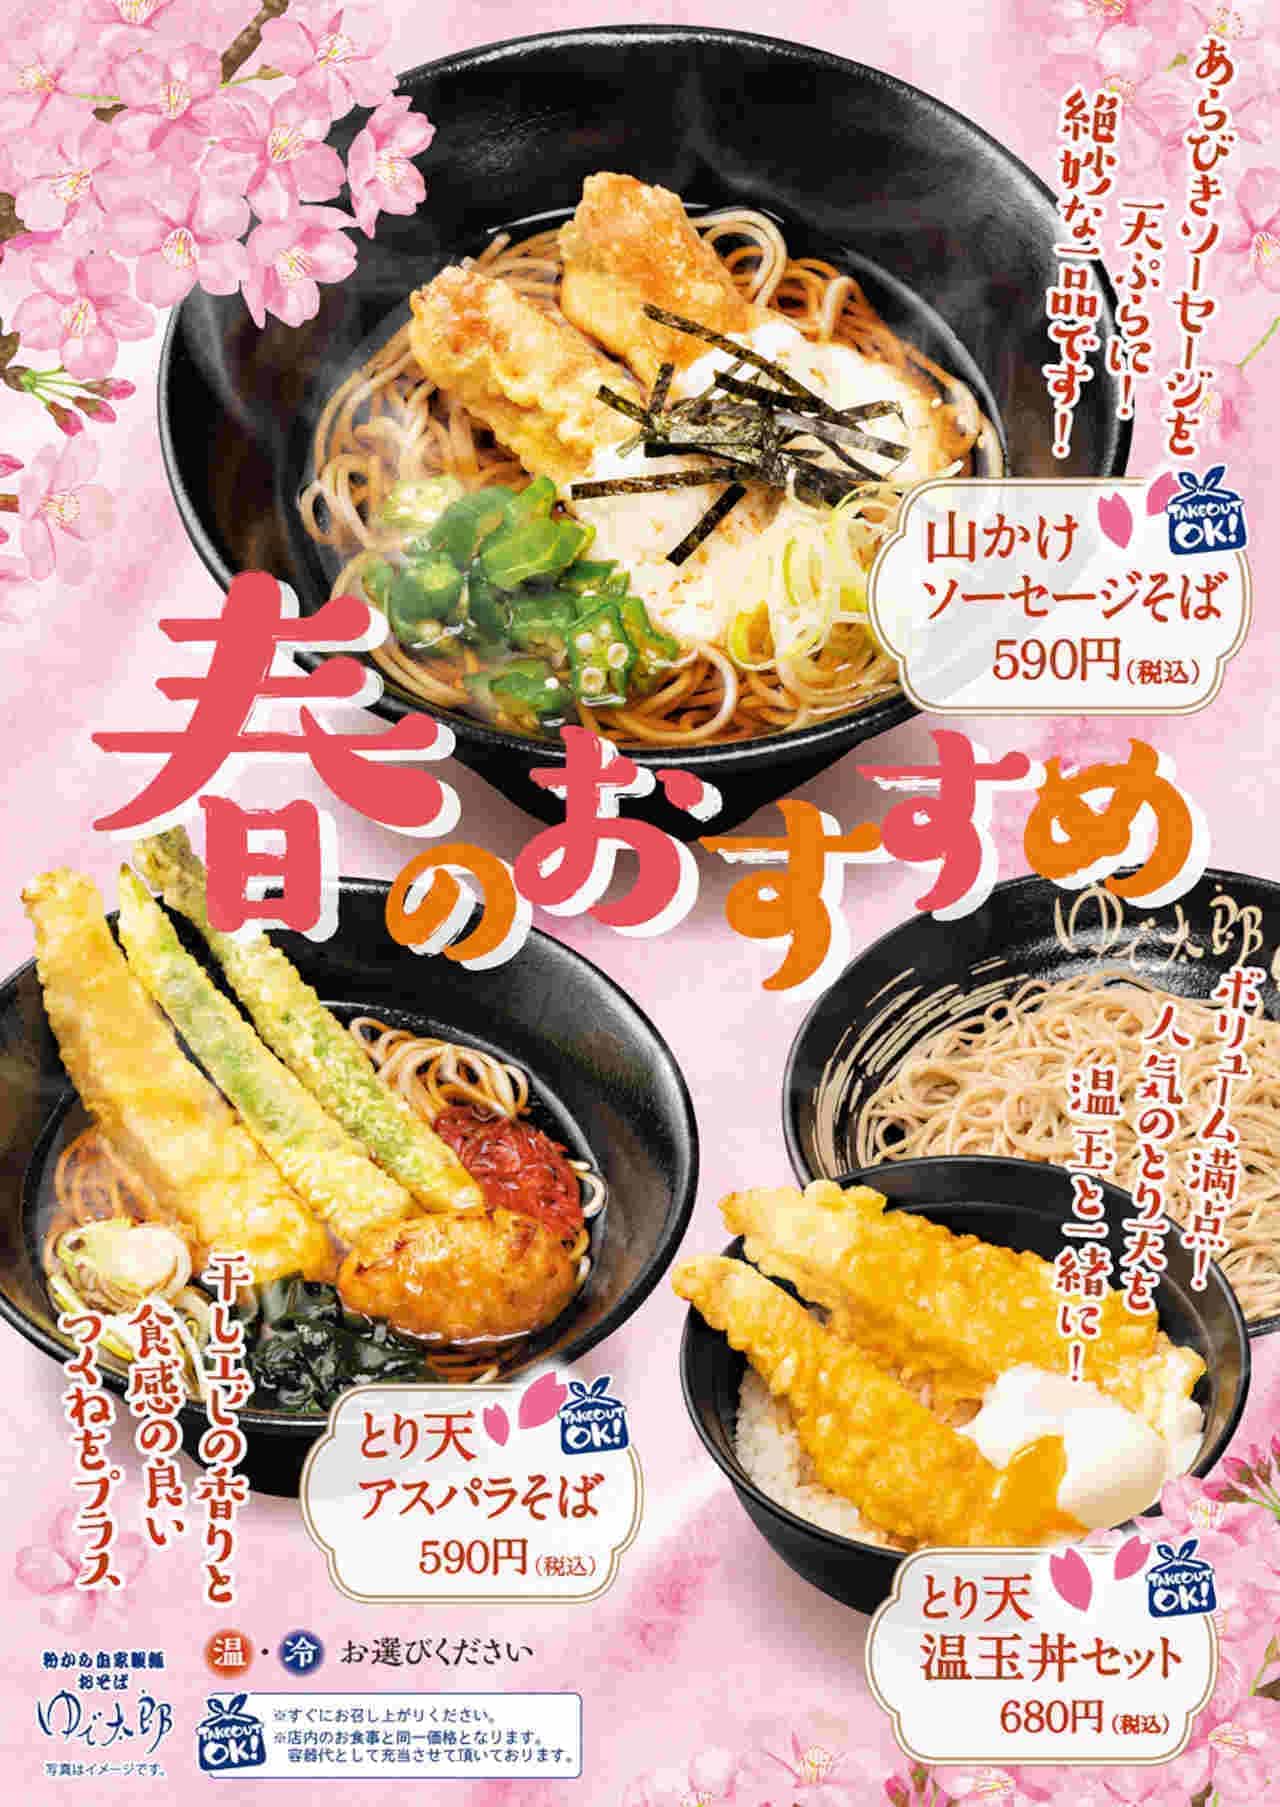 YUDETARO "Yamakake Sausage Soba", "Toriten Asparagus Soba", "Toriten Onten-don Set".